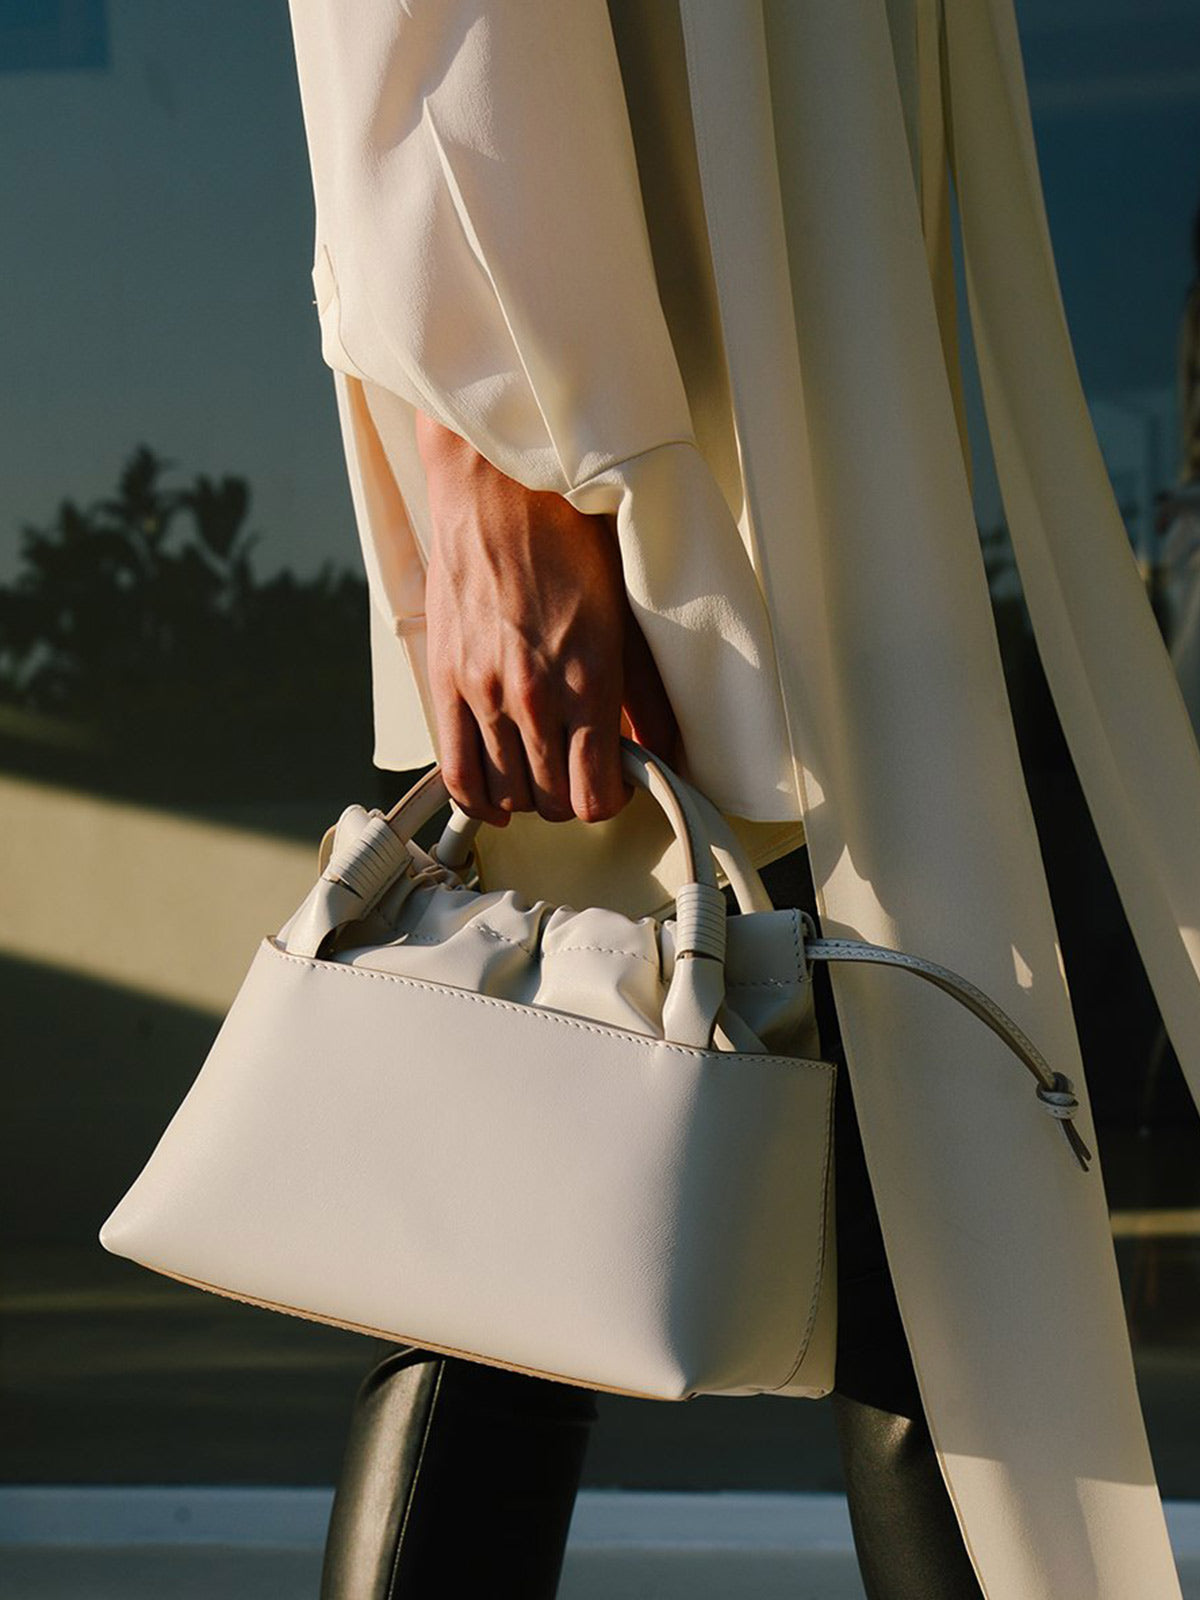 Sirena Bag | White Sirena Bag | White - Fashionkind